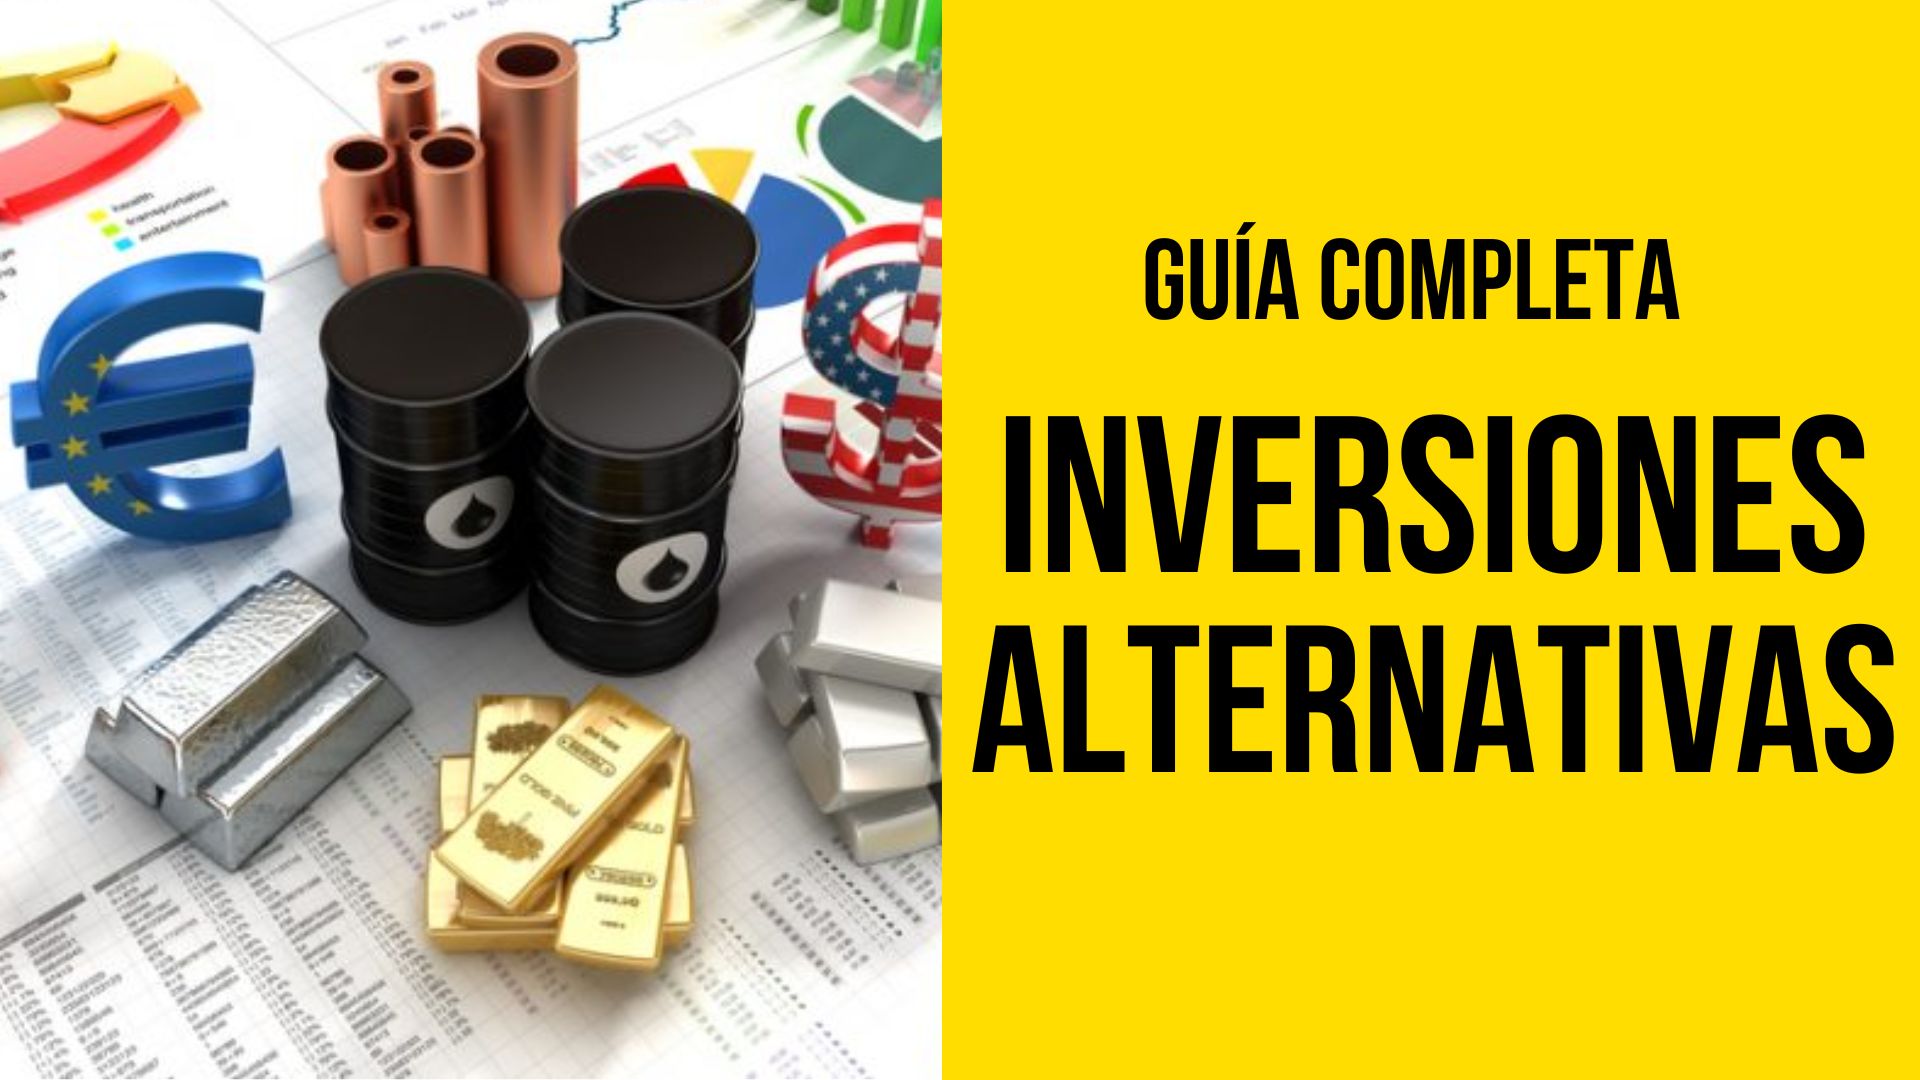 Inversiones Alternativas: Guía Completa